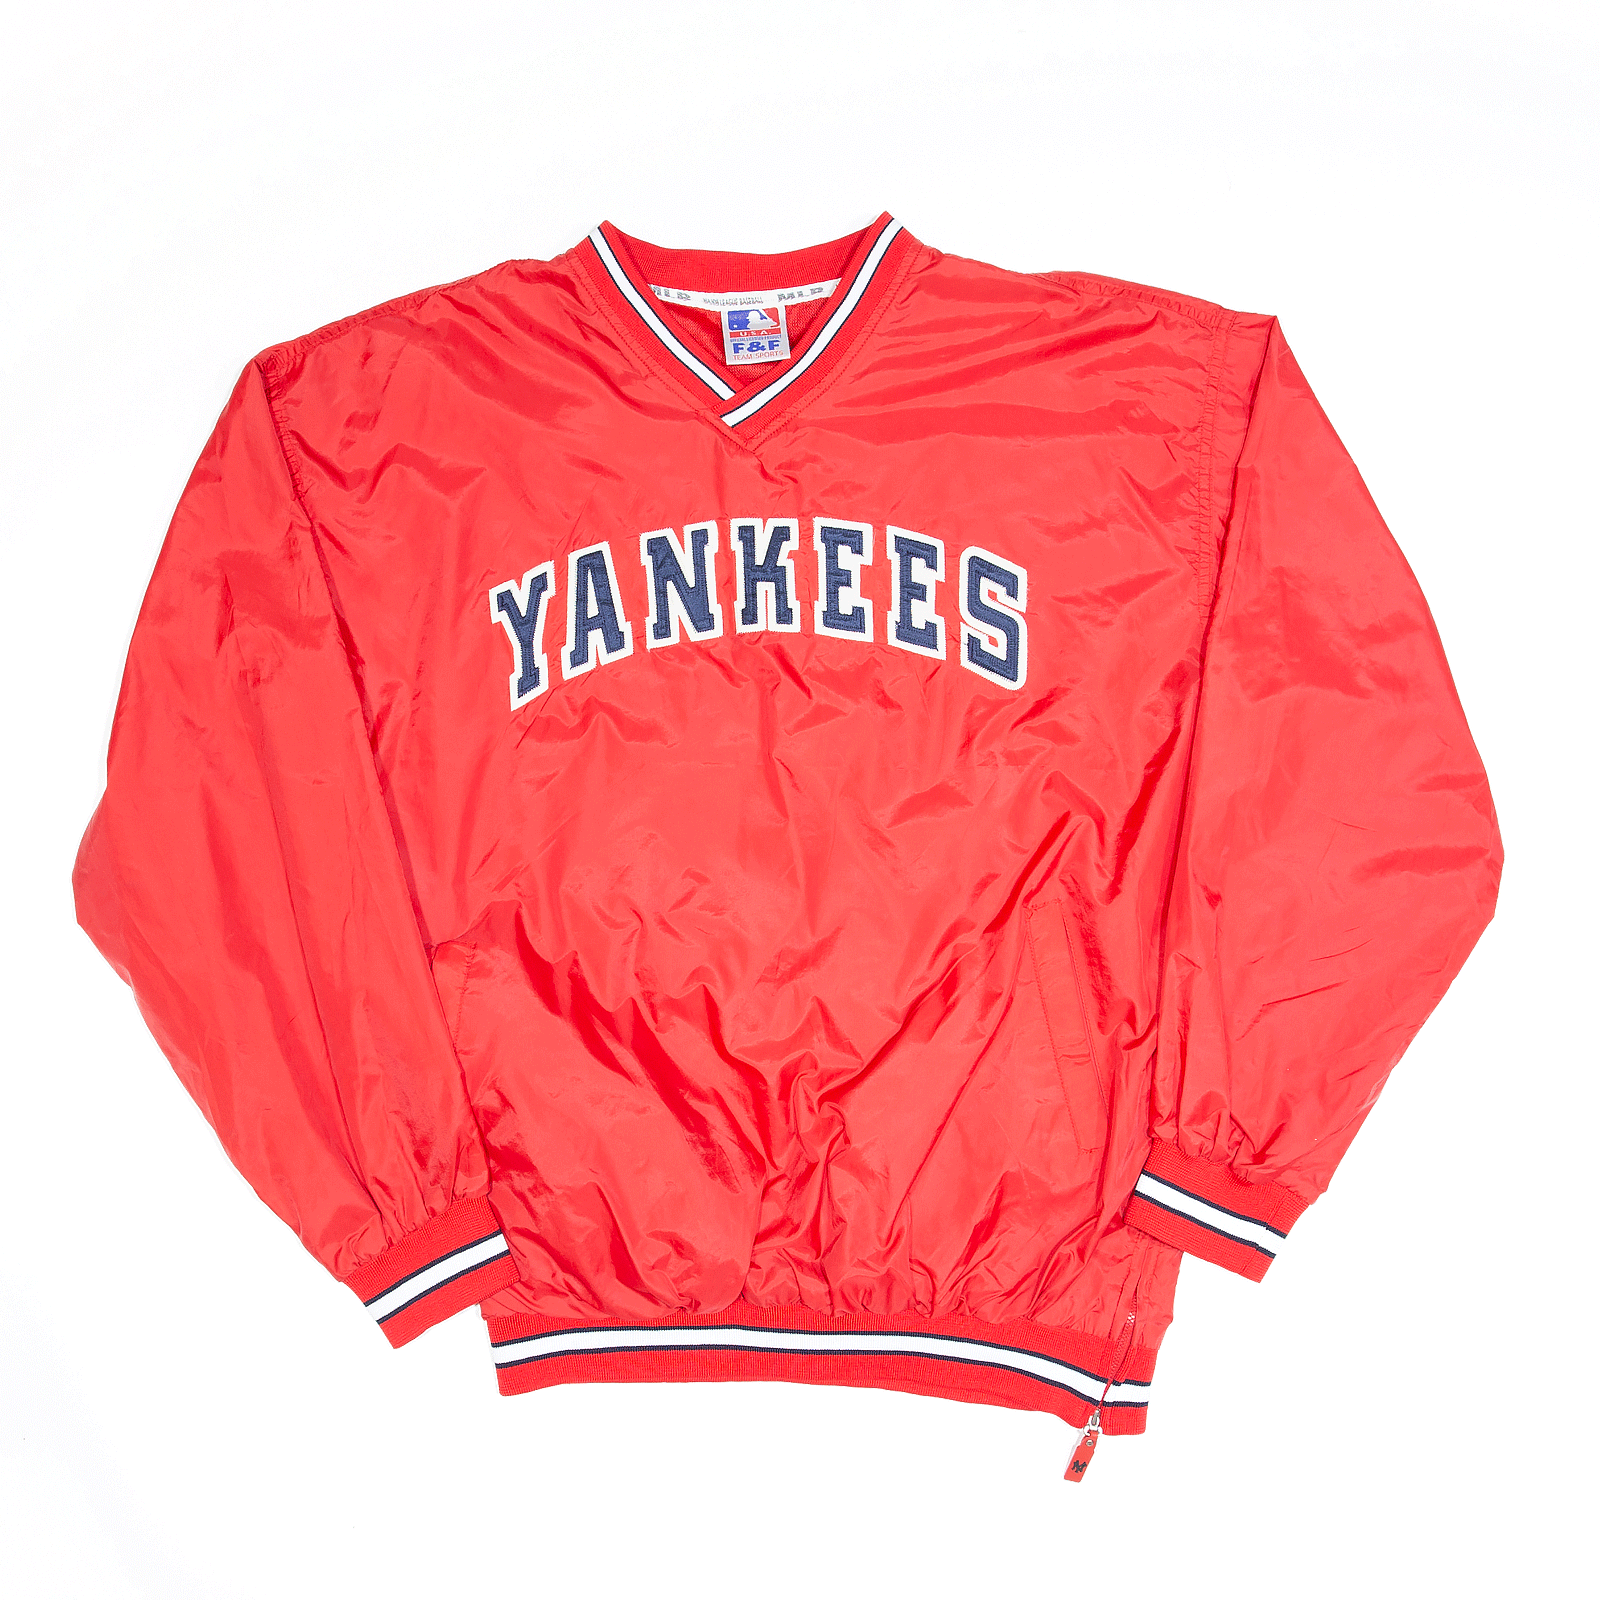 yankees jacket red